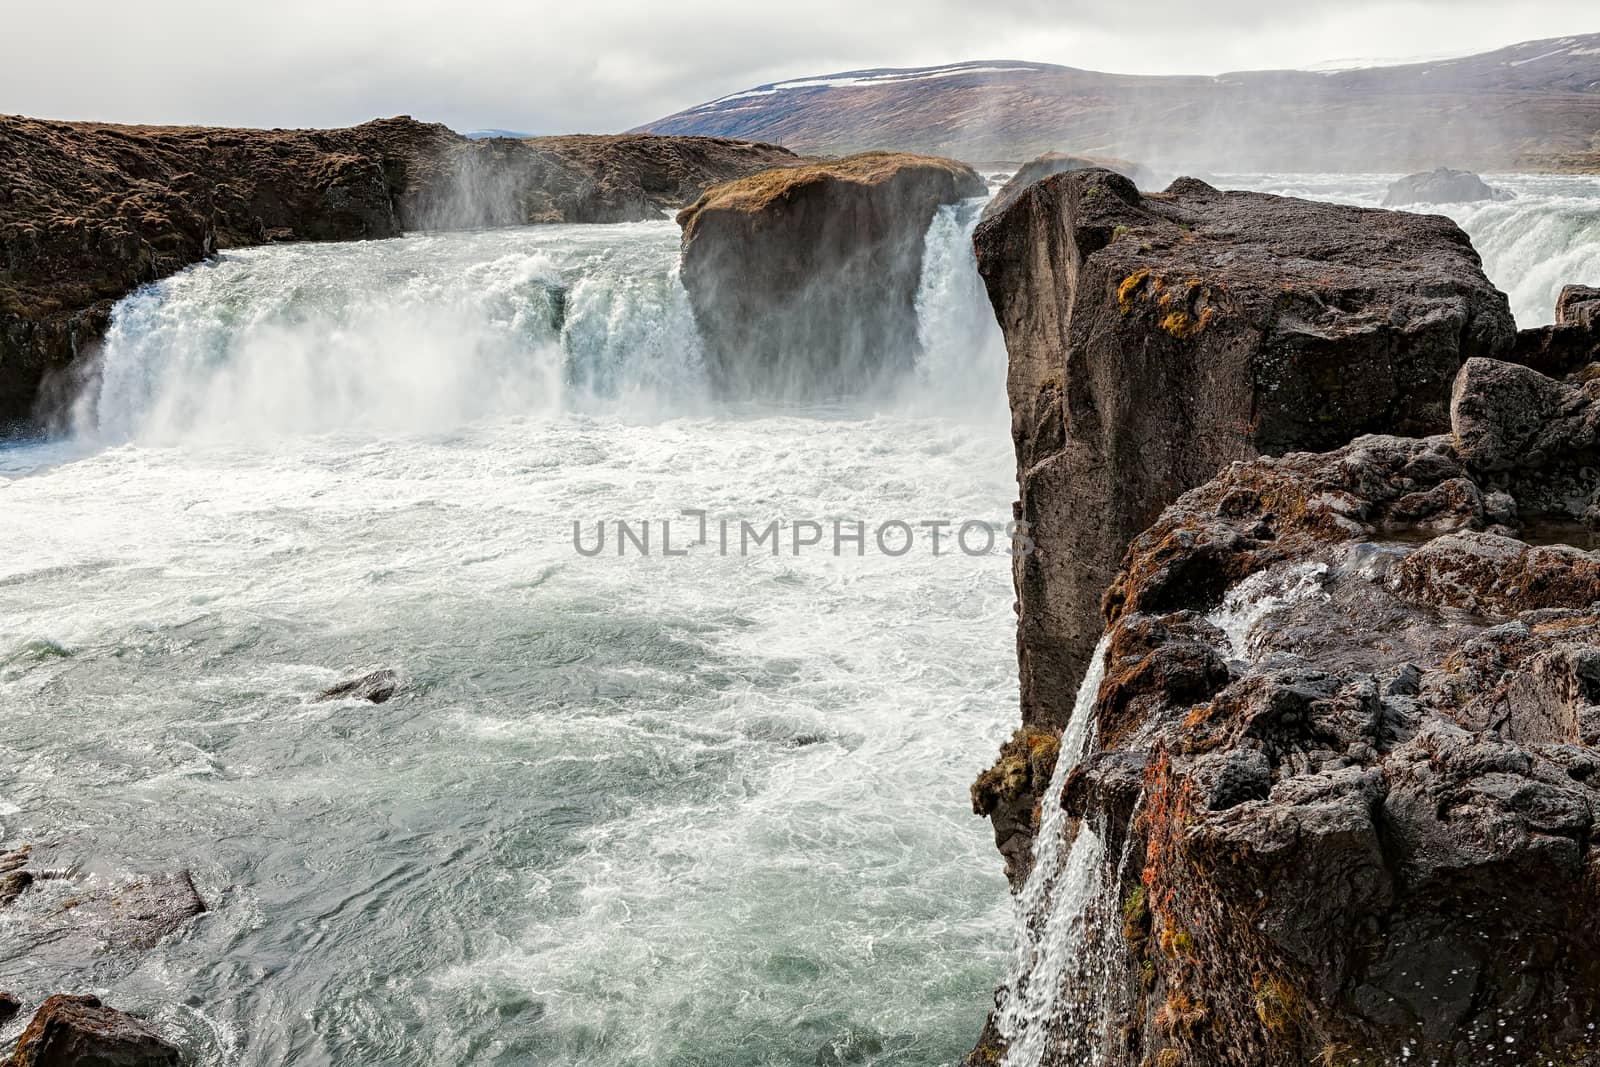 Amazing view of Godafoss waterfall near Akureyri, Iceland